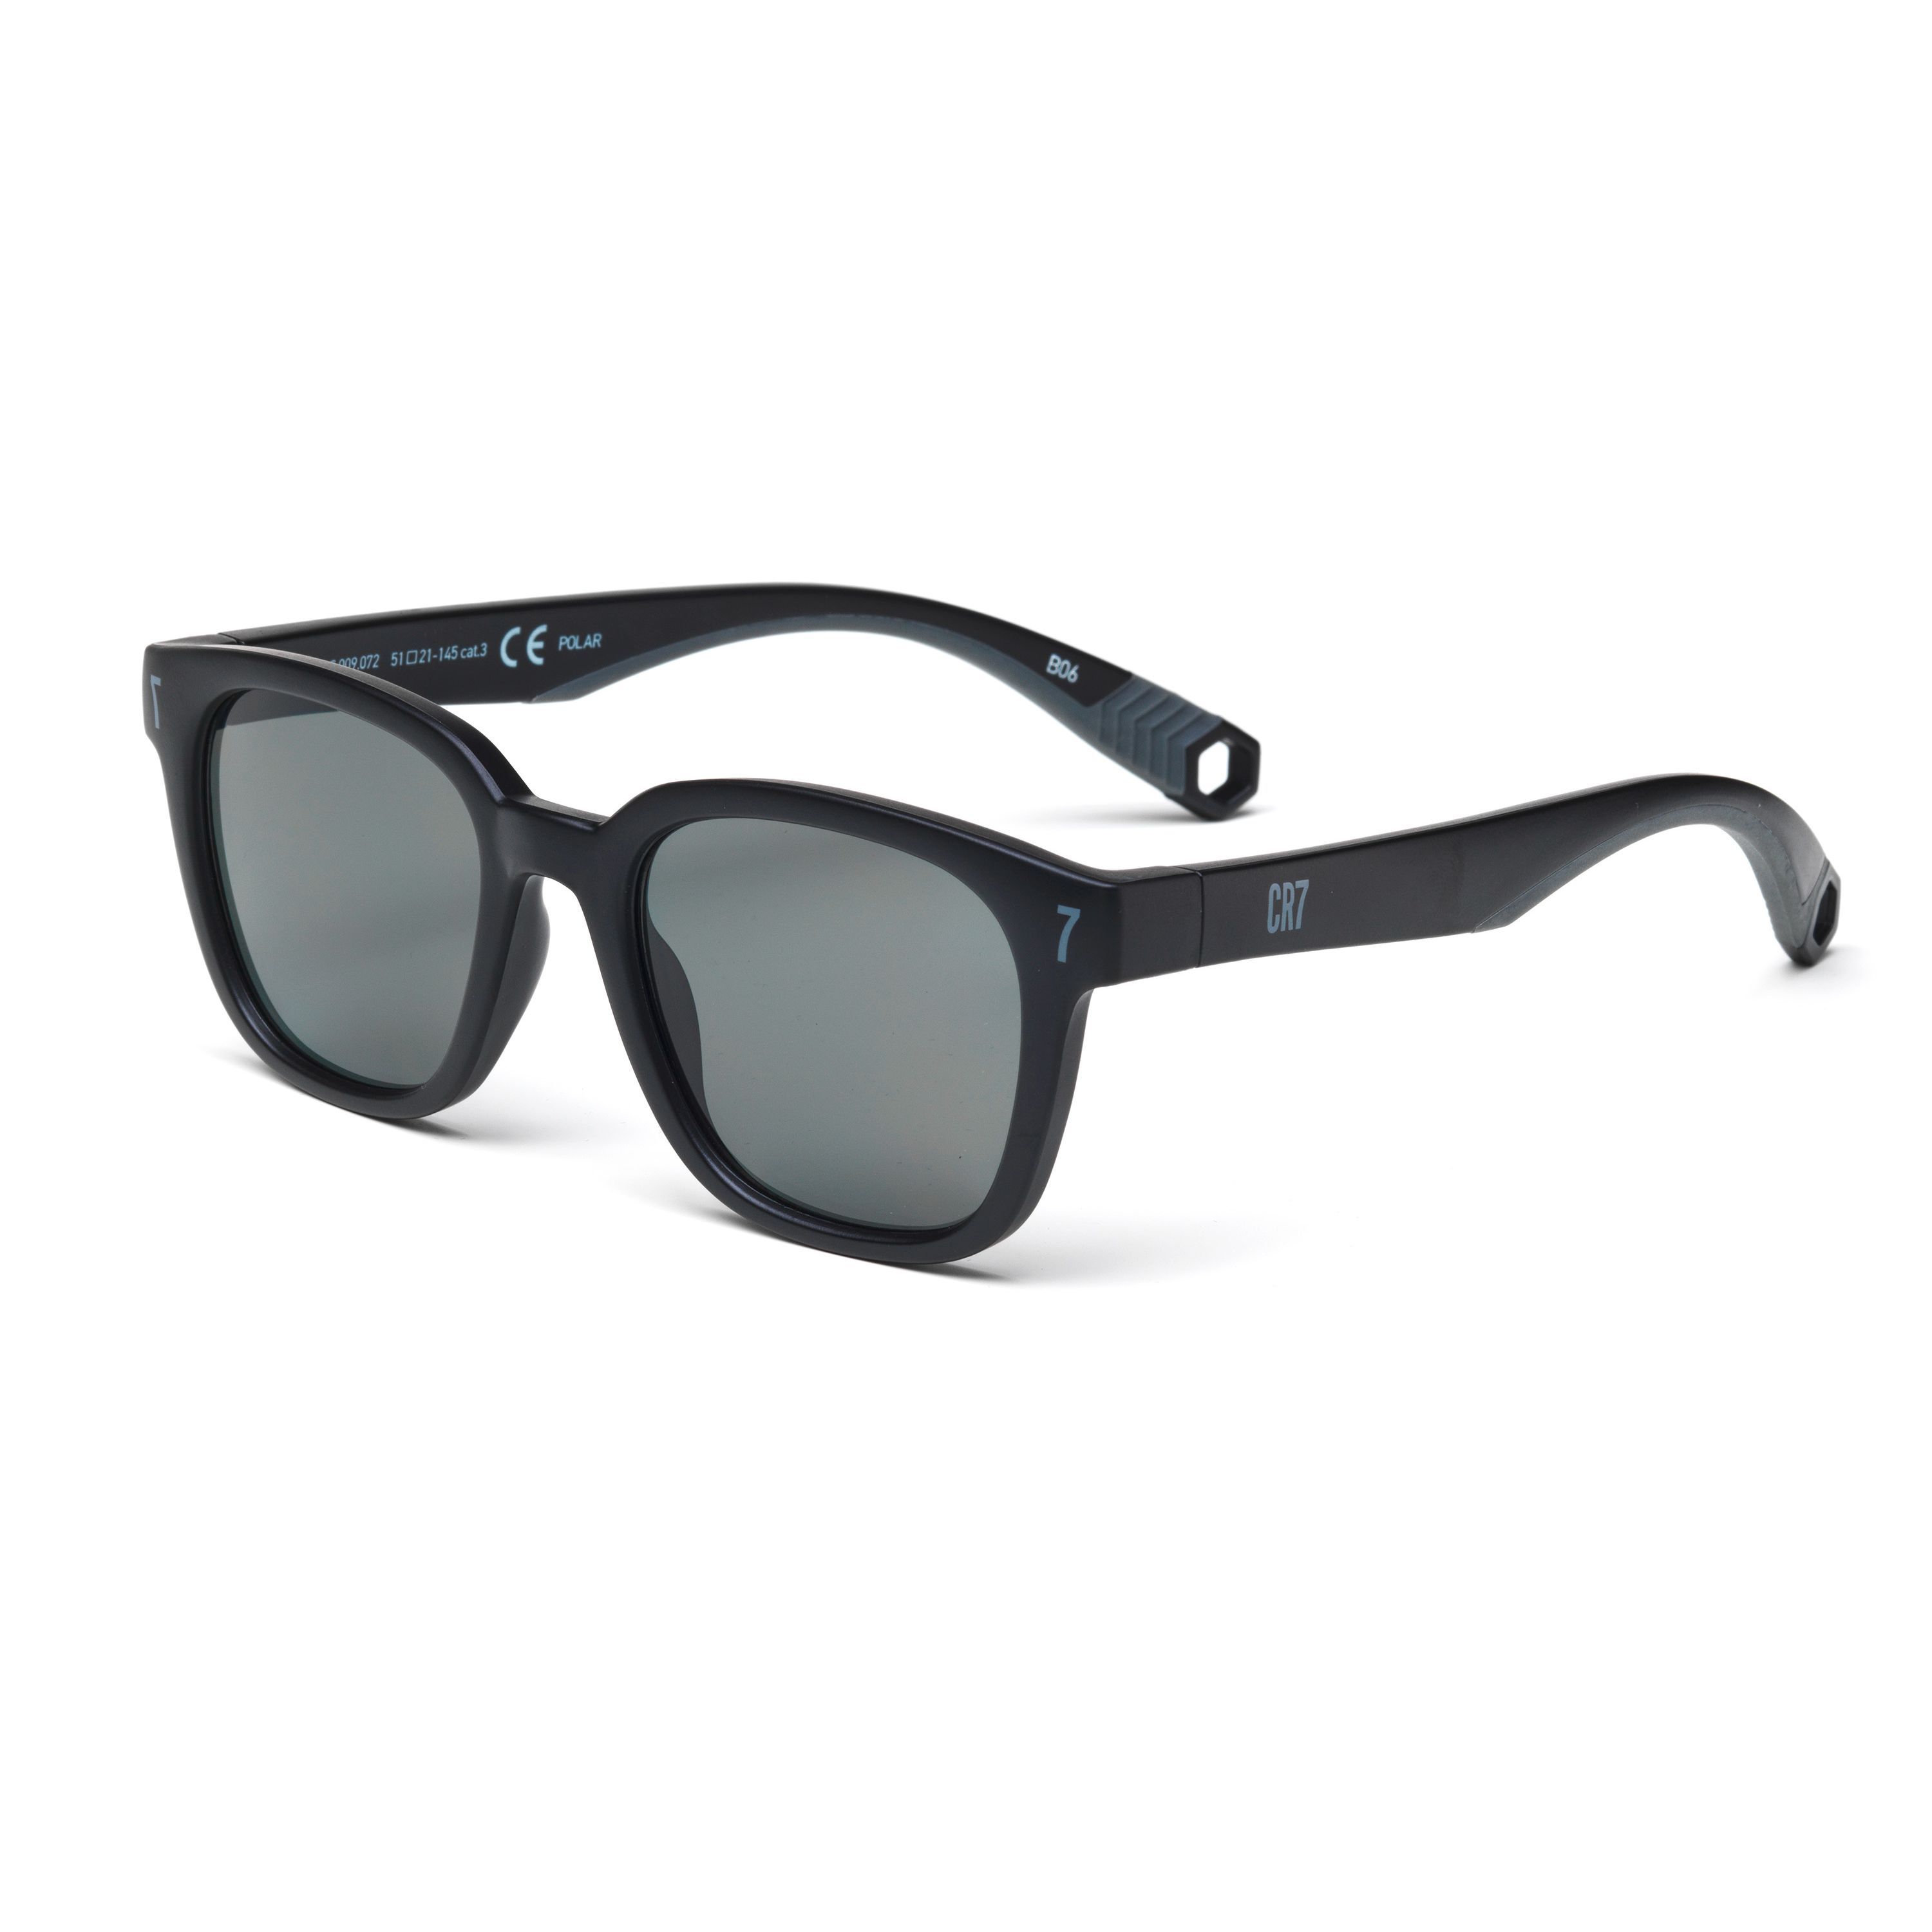 CR7001S Square Sunglasses 9.072 - size 51